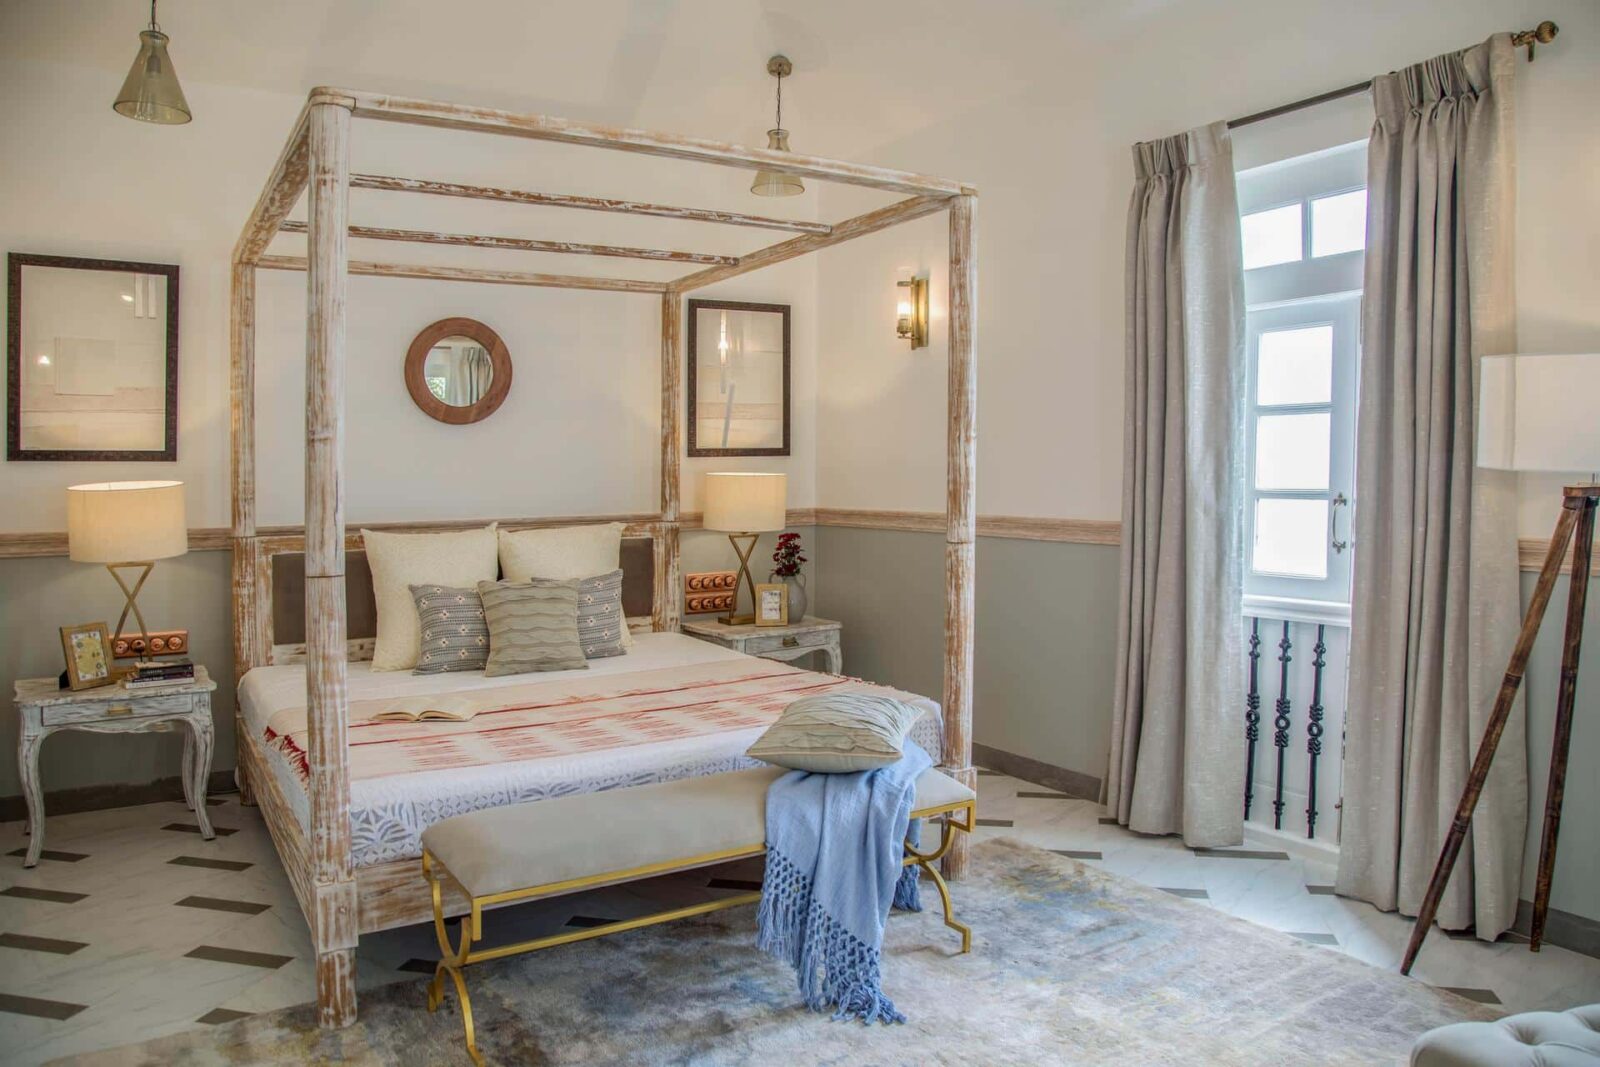 Monforte Villa E - Bungalows in Goa for Sale - Stylish Bedroom View